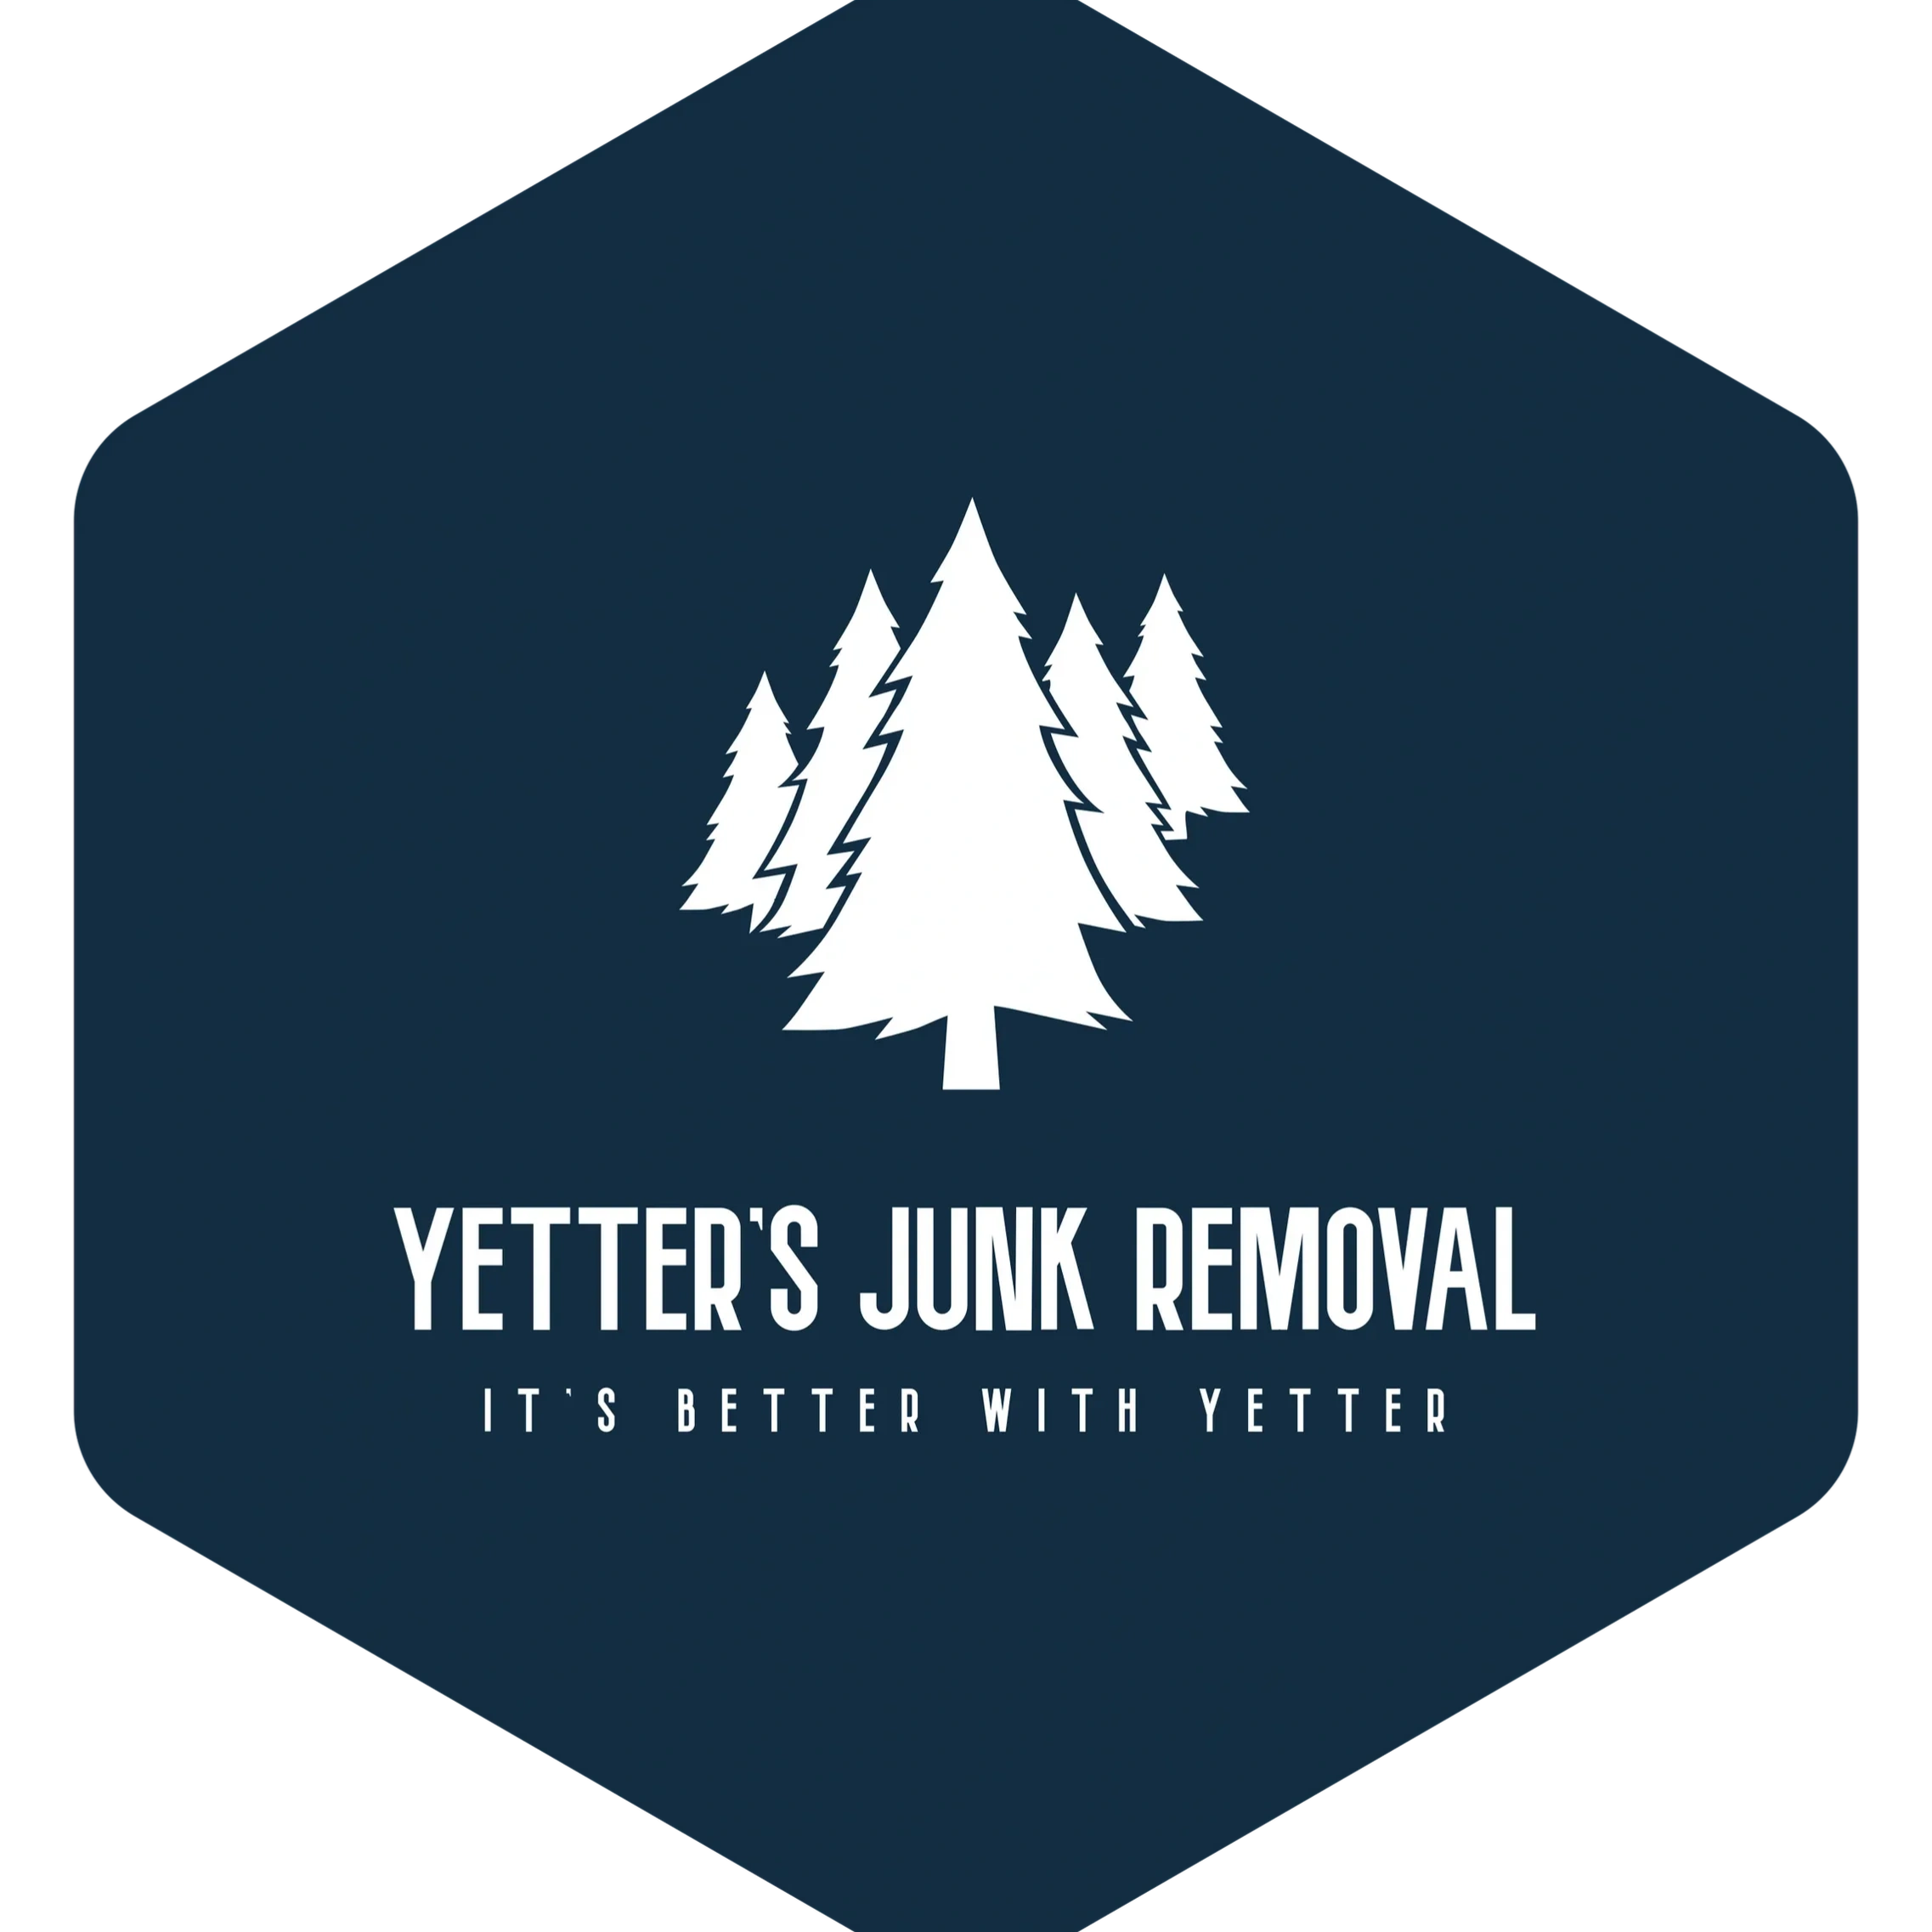 Silverdale junk removal logo